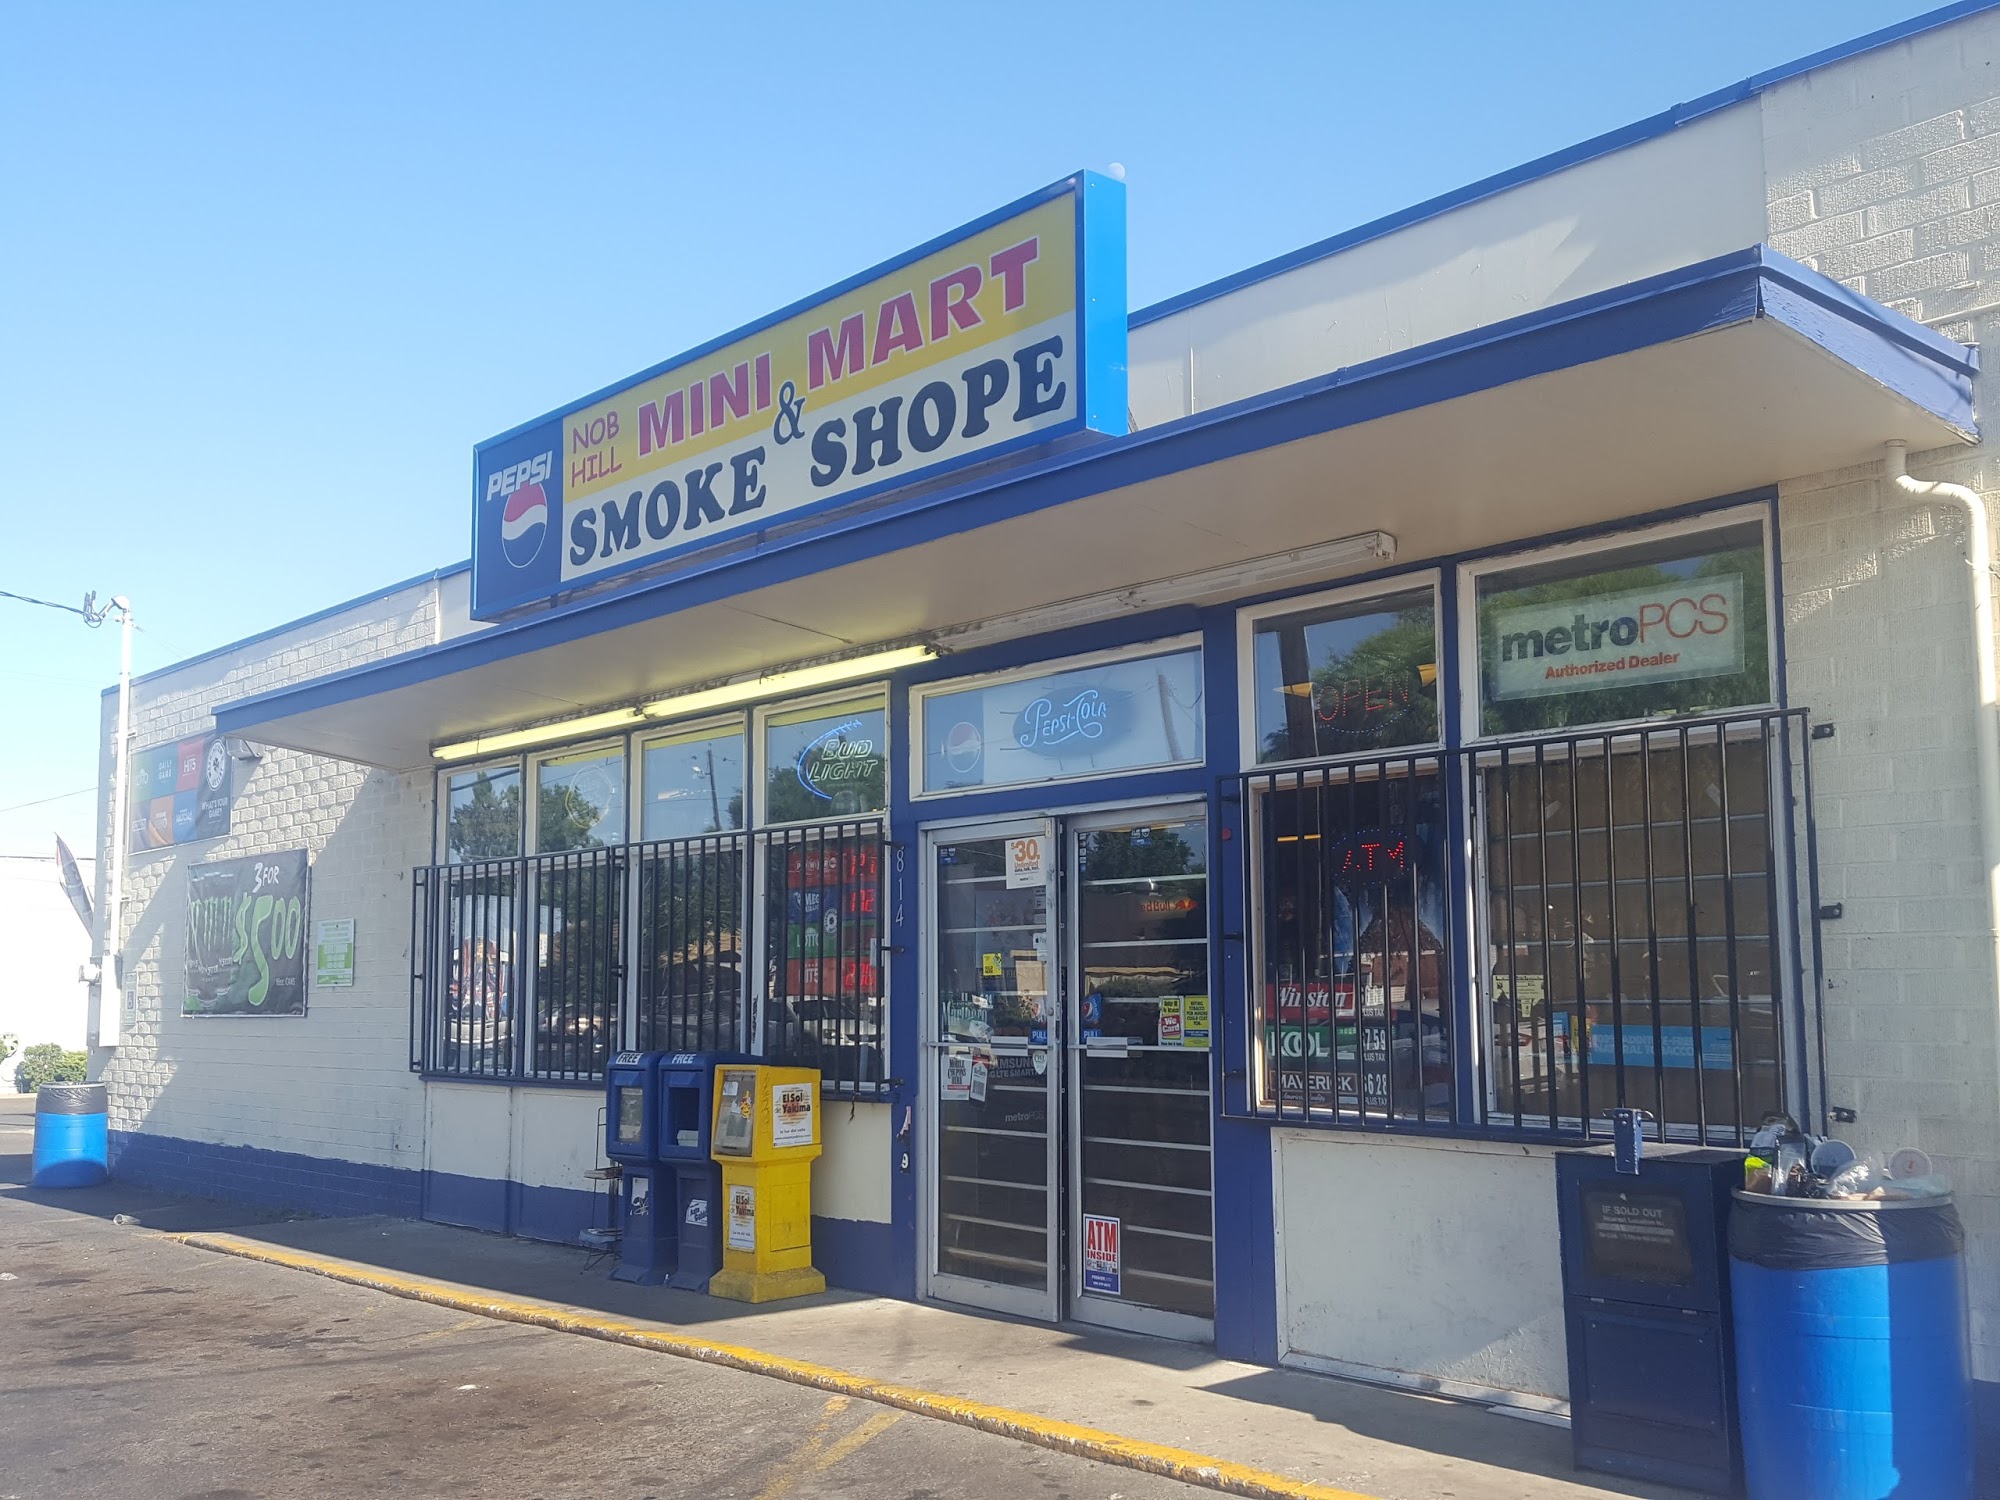 Nob Hill Mini Mart & Smoke Shope